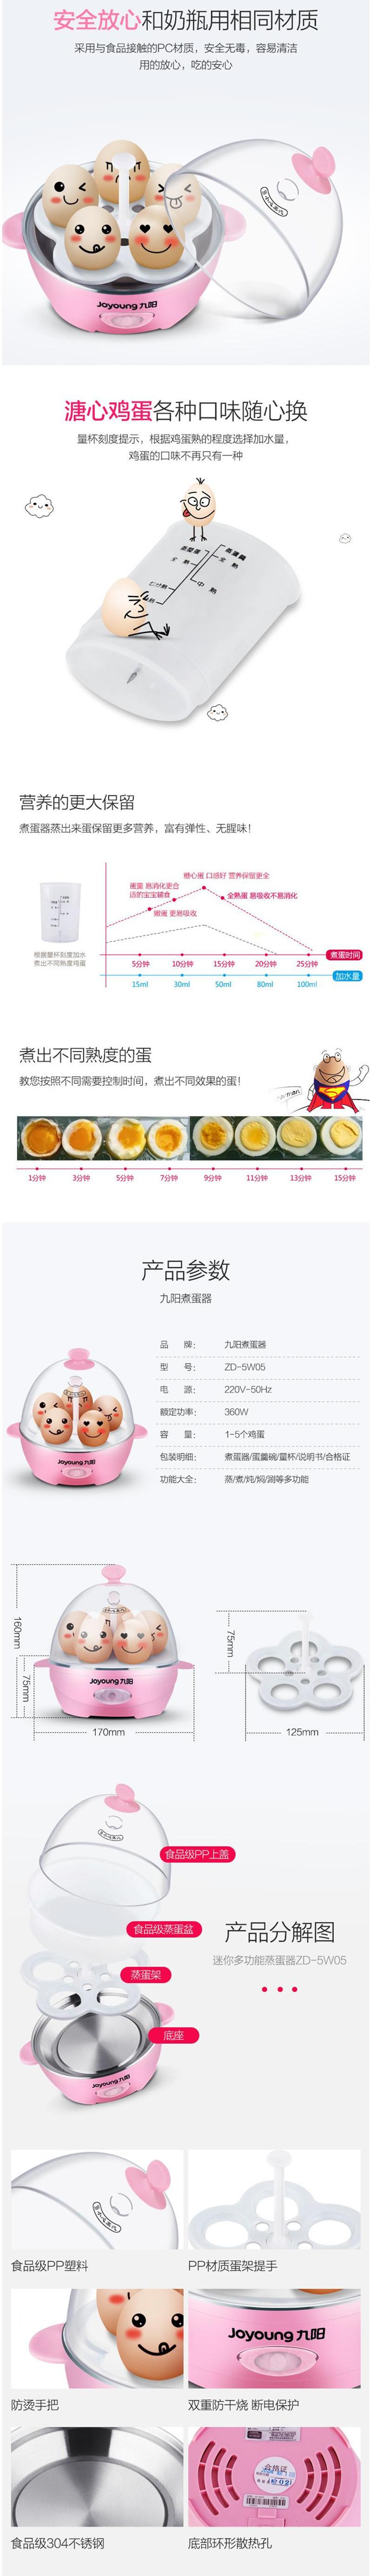 【家用电器】九阳 ZD-5W05煮蛋器自动断电 迷你小型家用多功能蒸蛋器